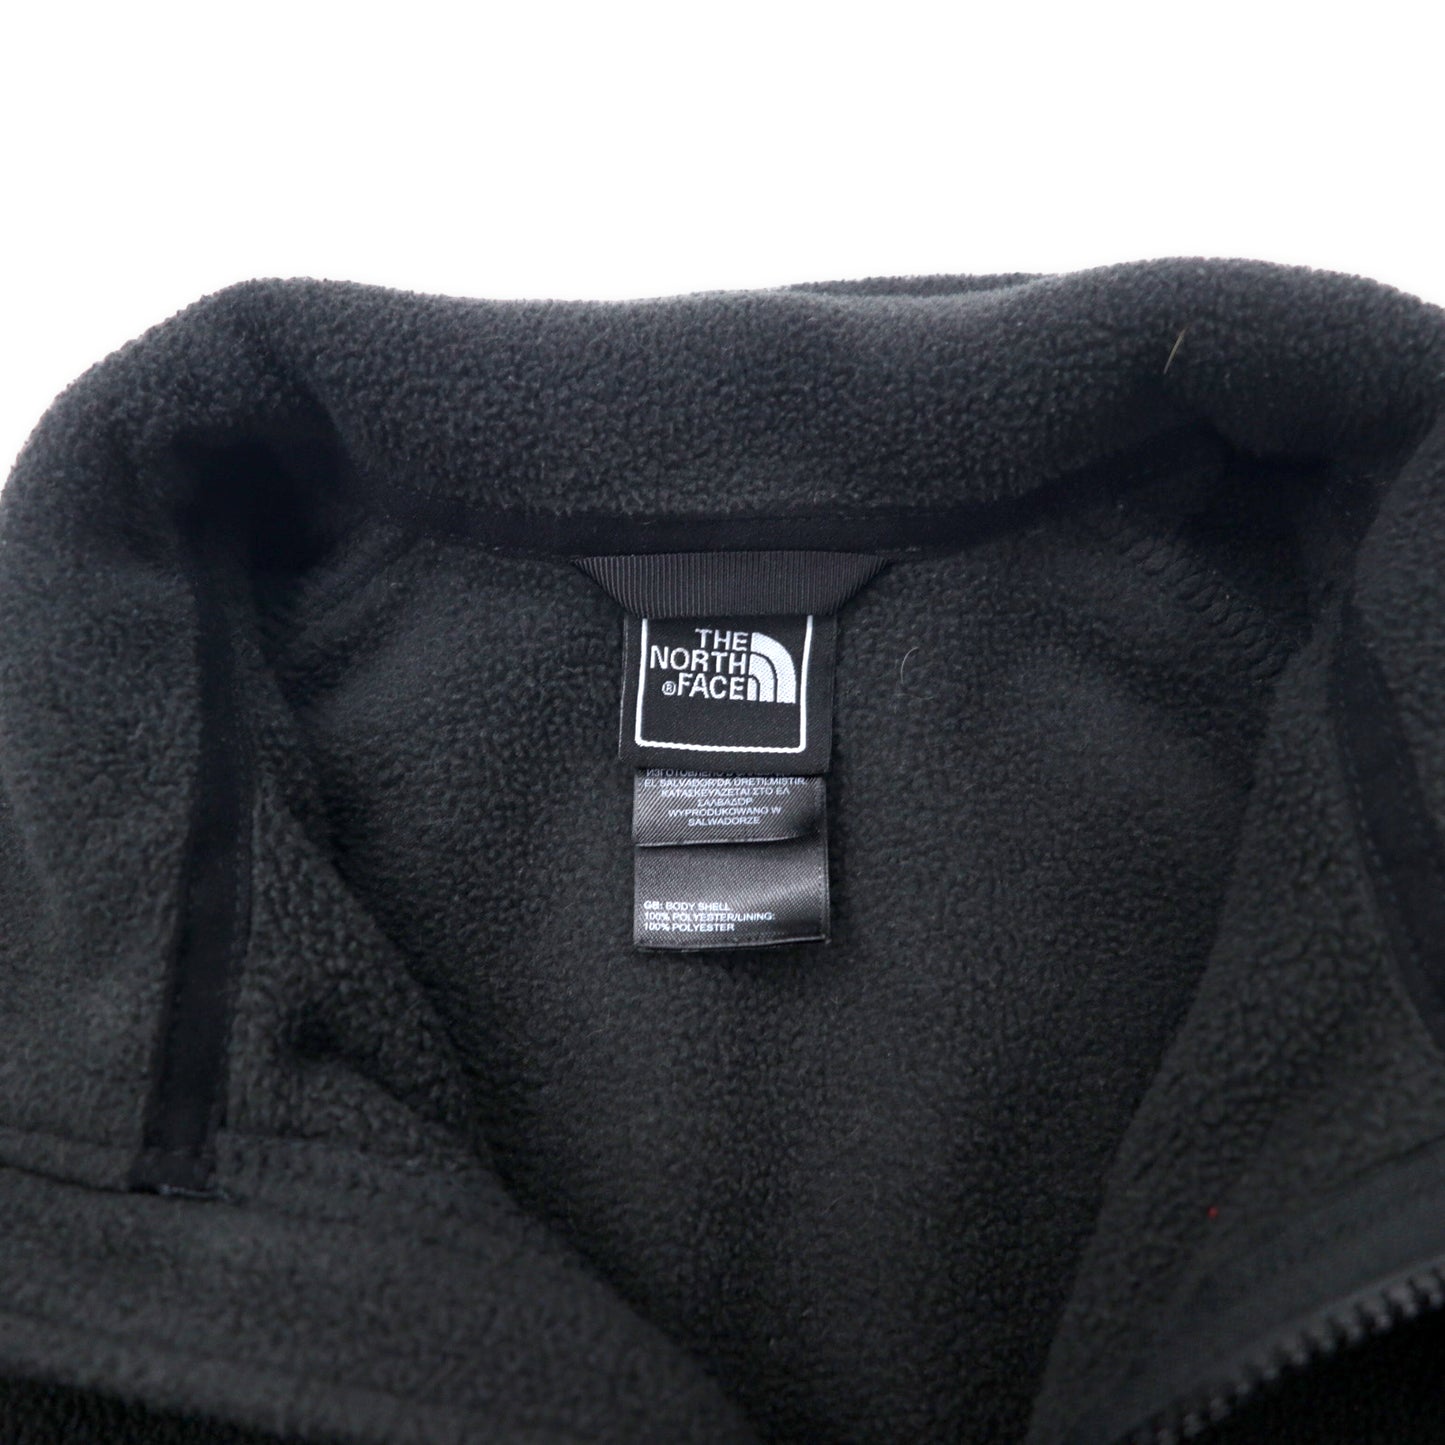 THE NORTH FACE フルジップ フリースジャケット S ブラック ポリエステル ワンポイントロゴ刺繍